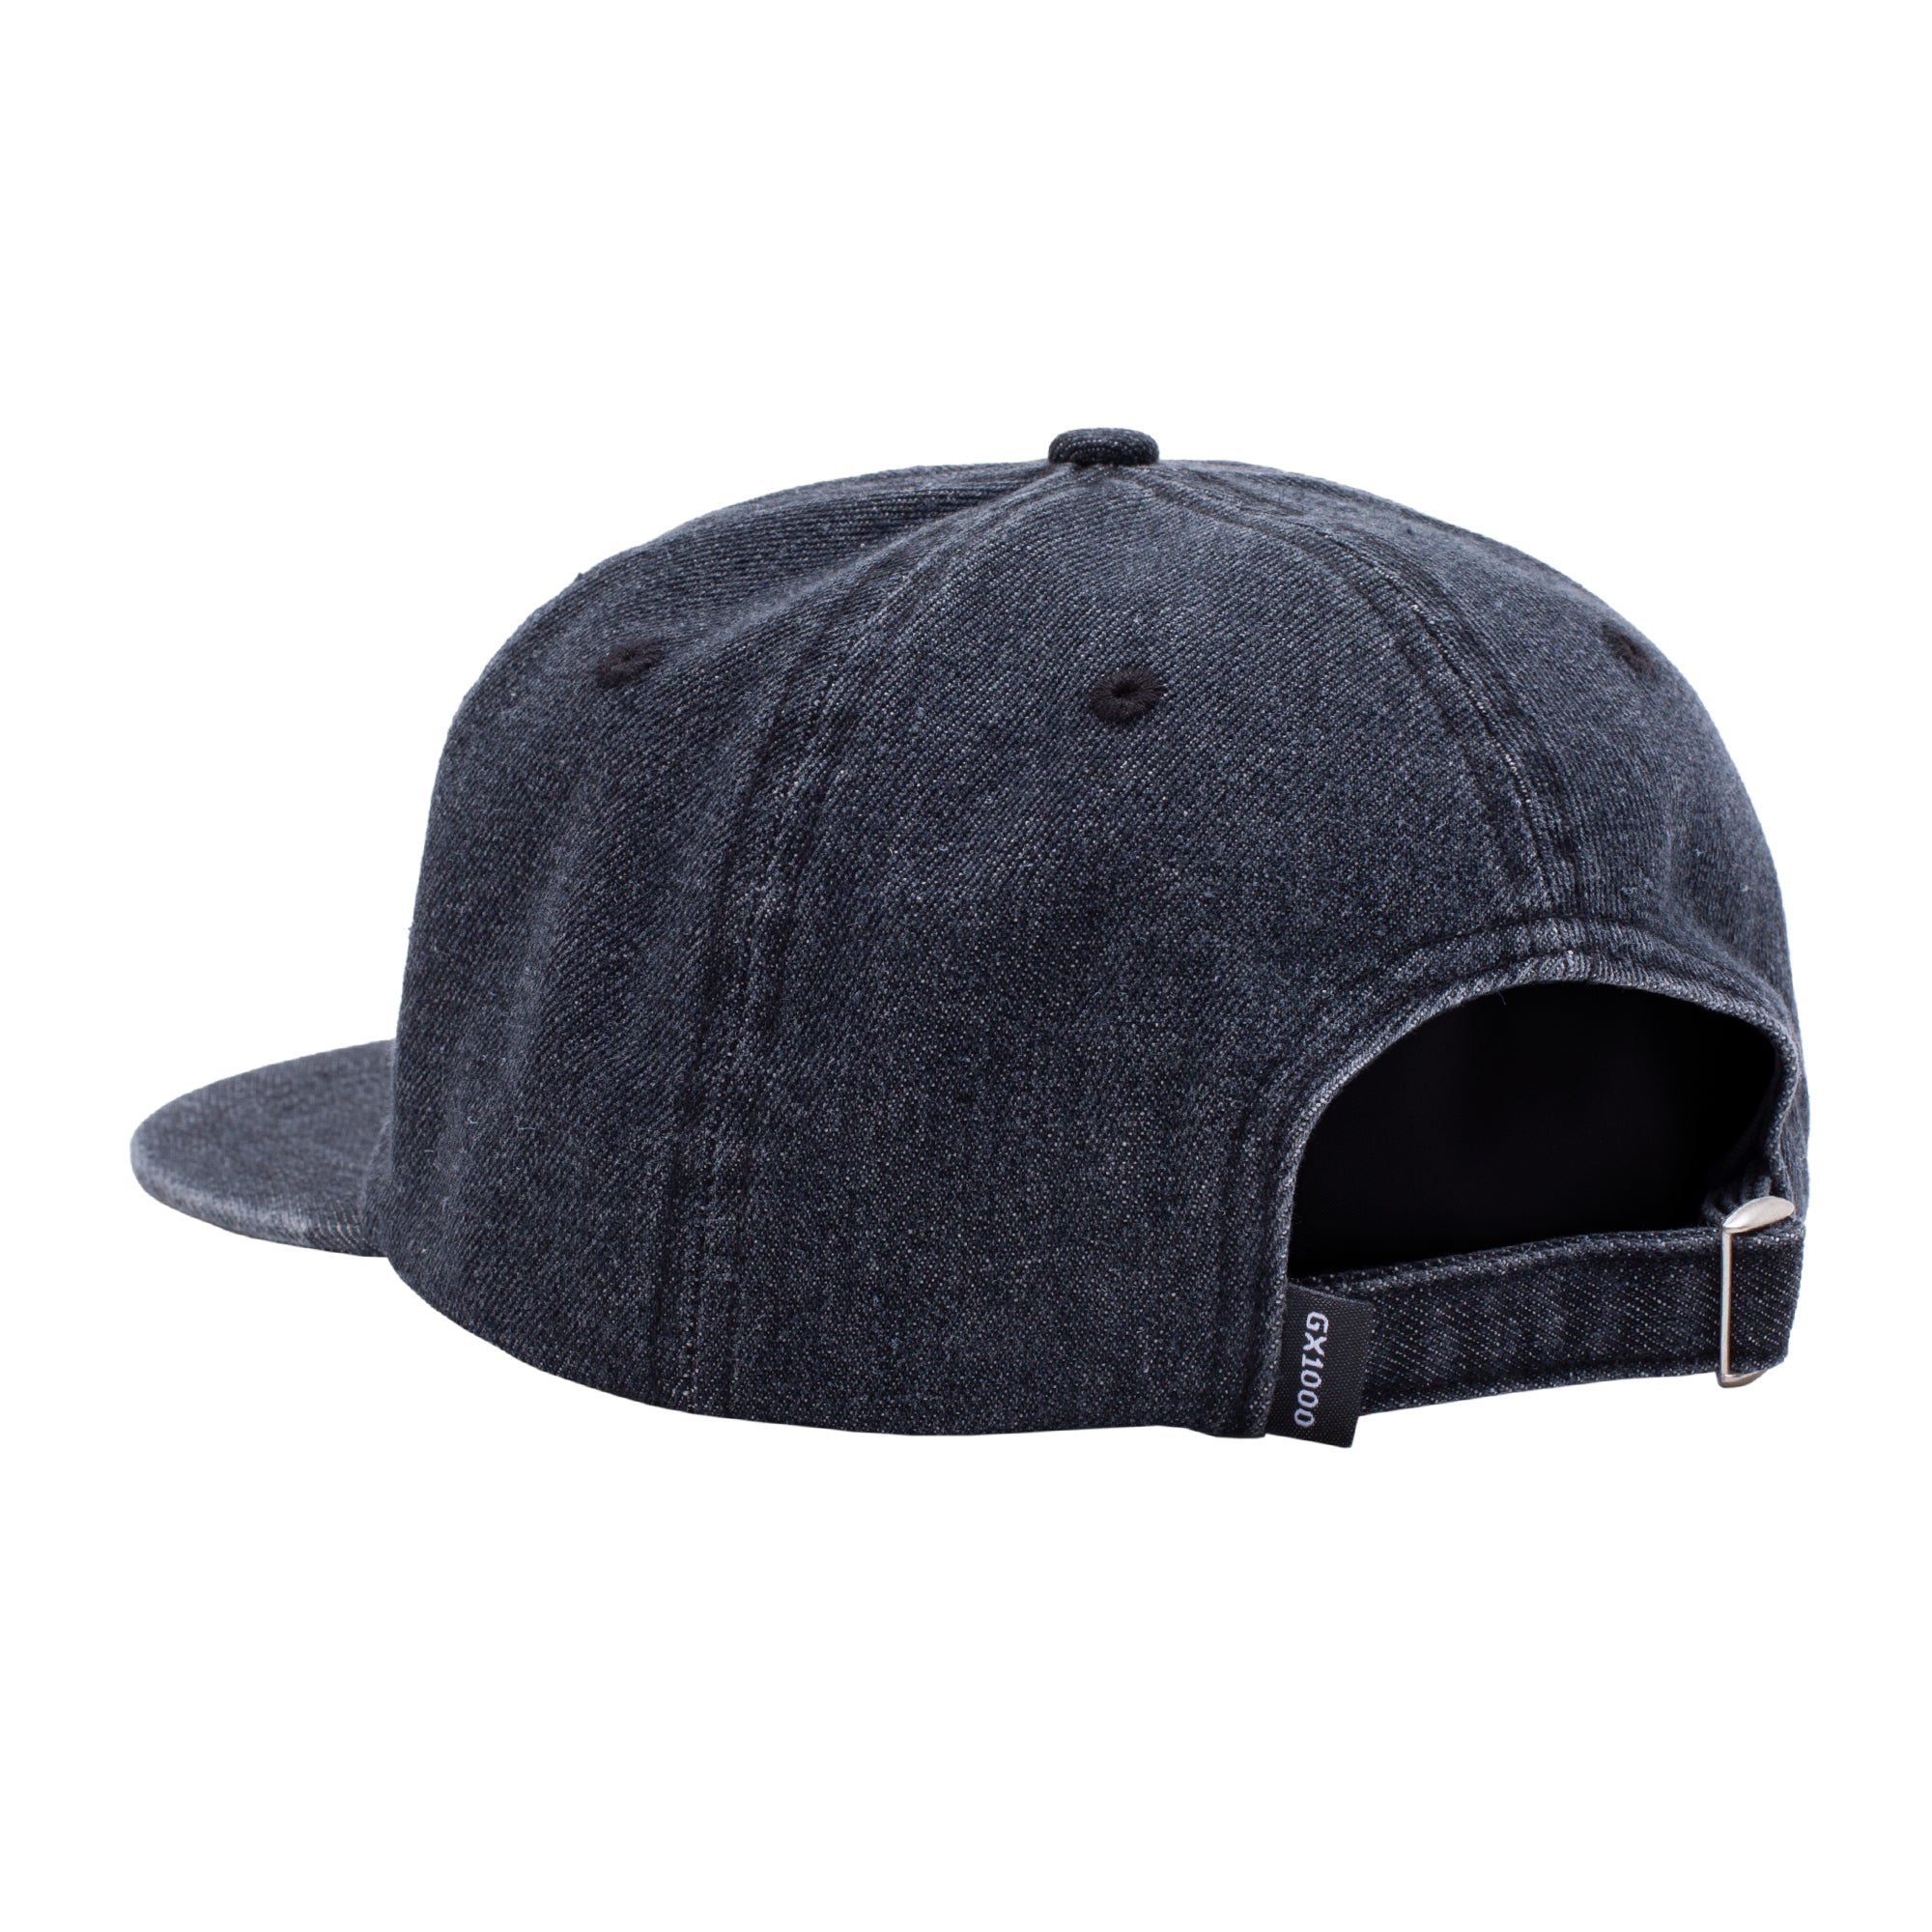 GX1000 - Tag Hat "Black Wash"